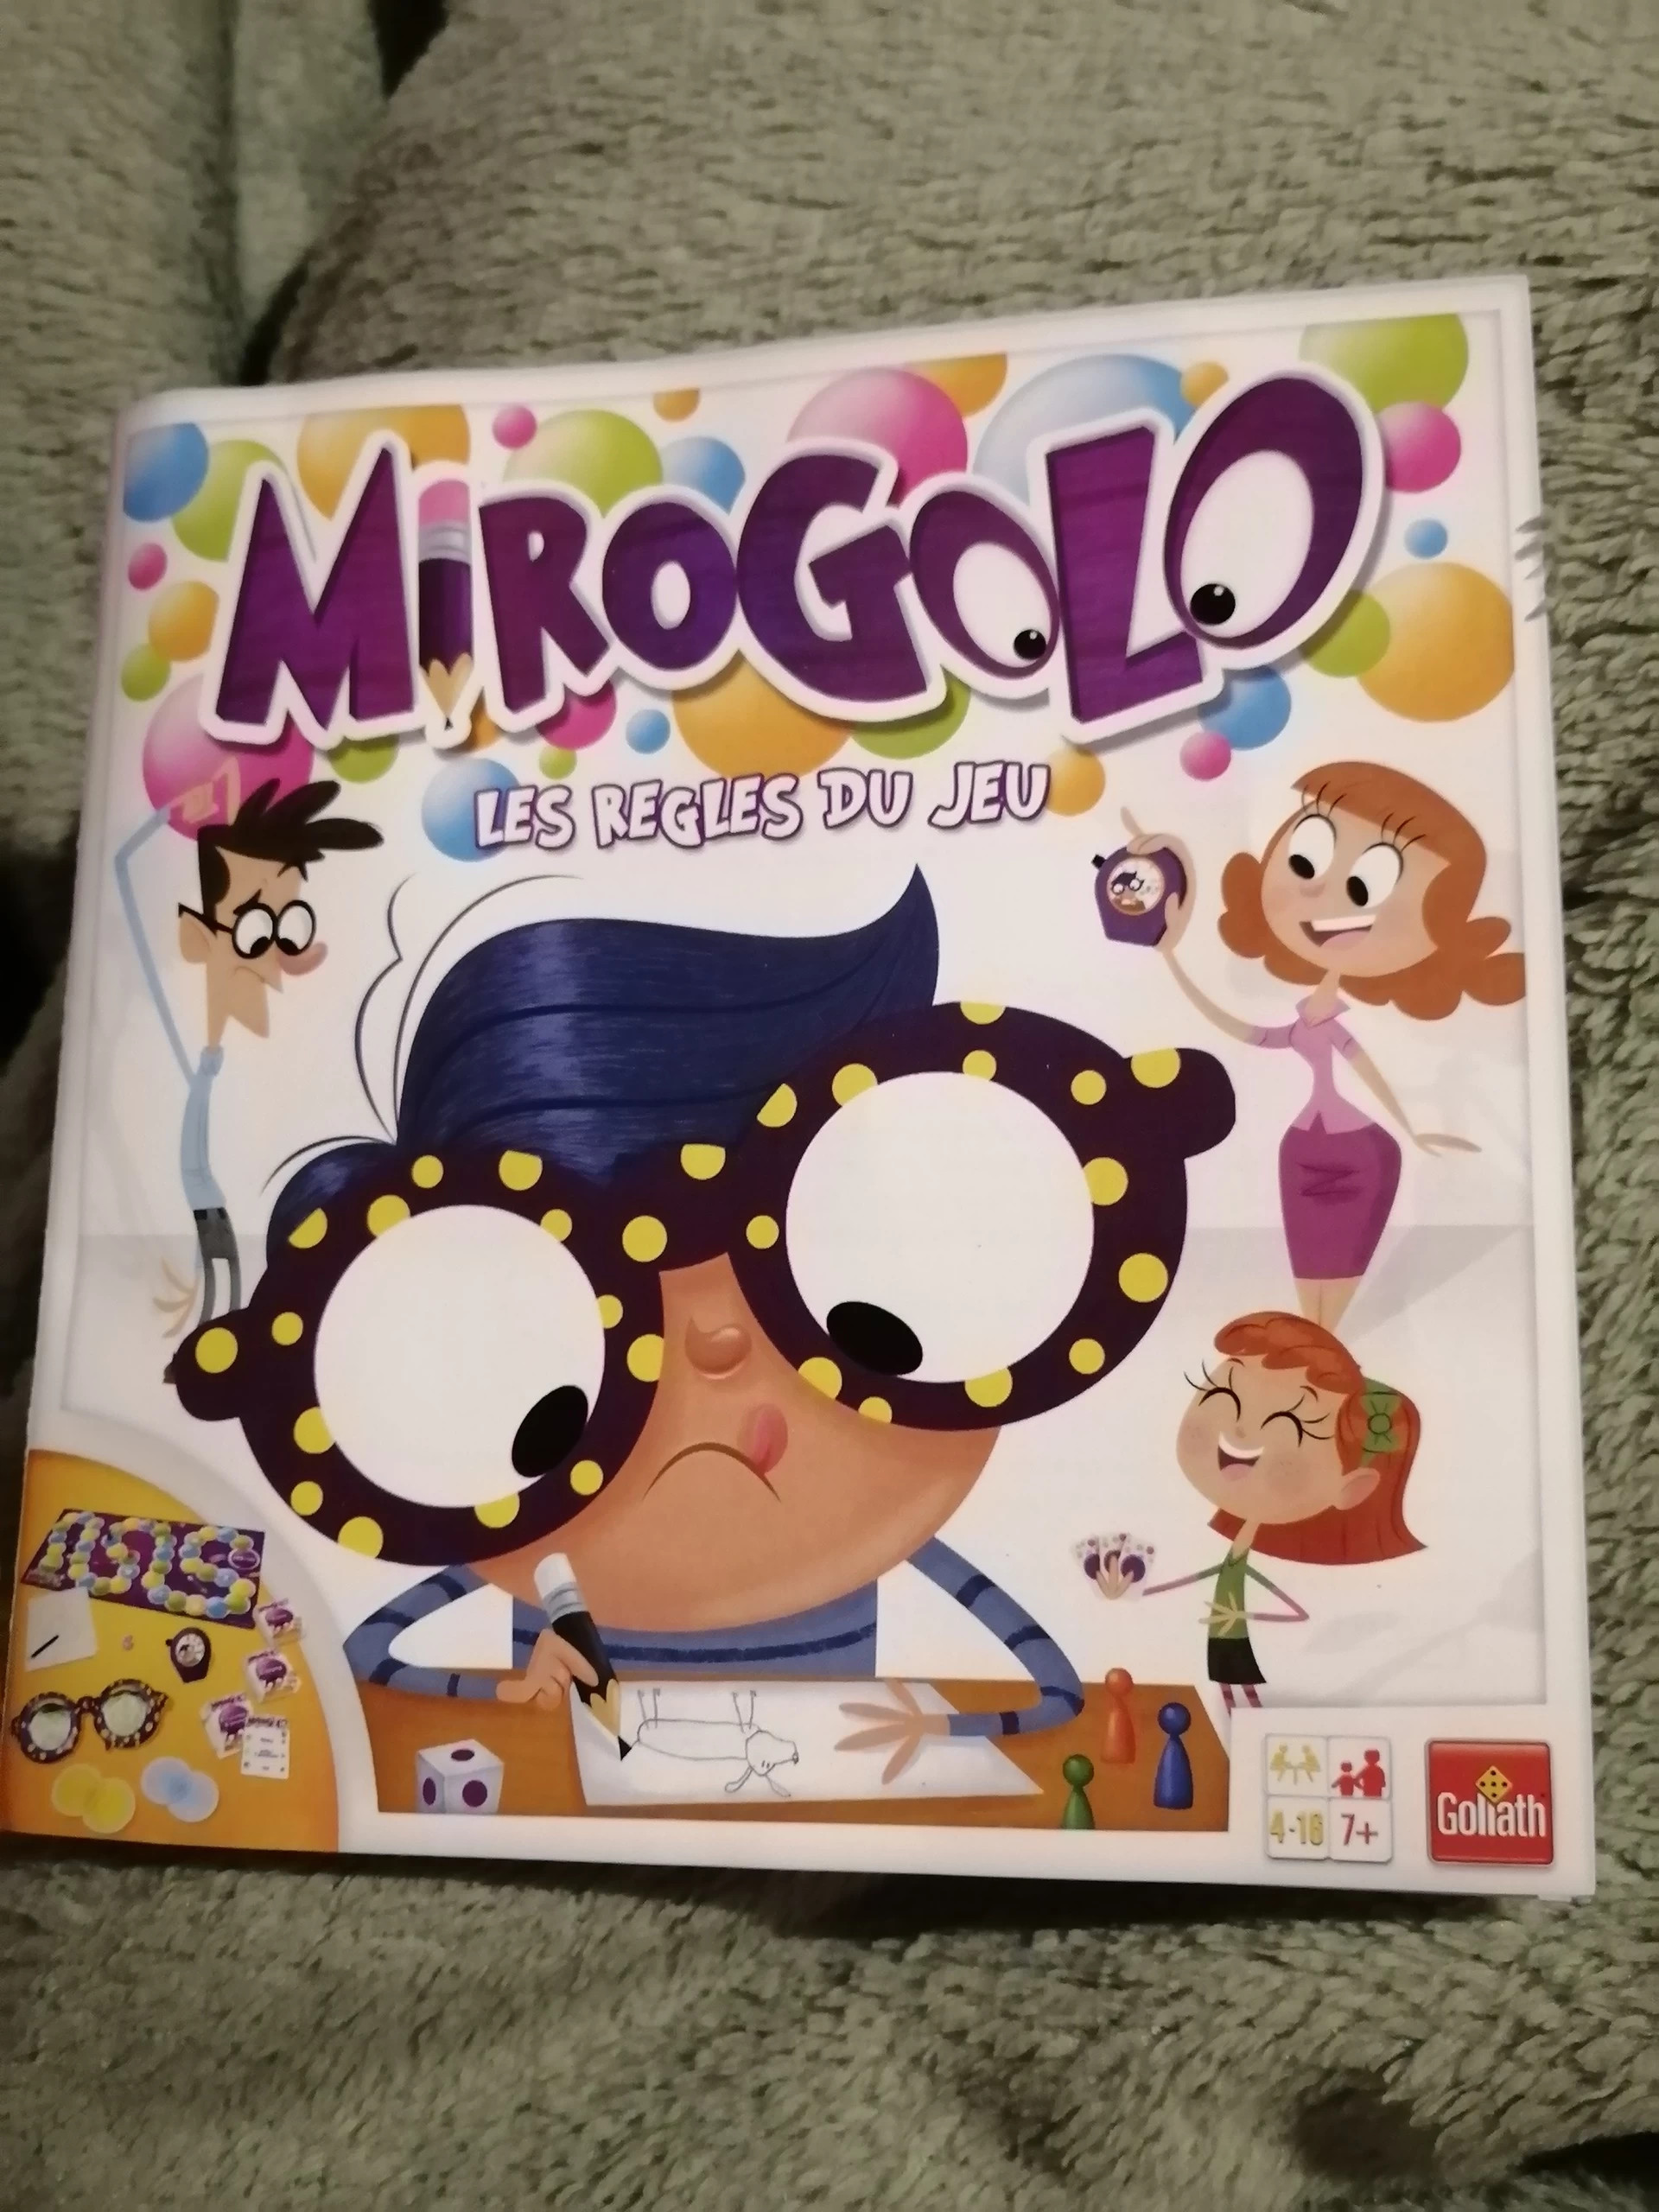 Mirogolo pour pièces détachées